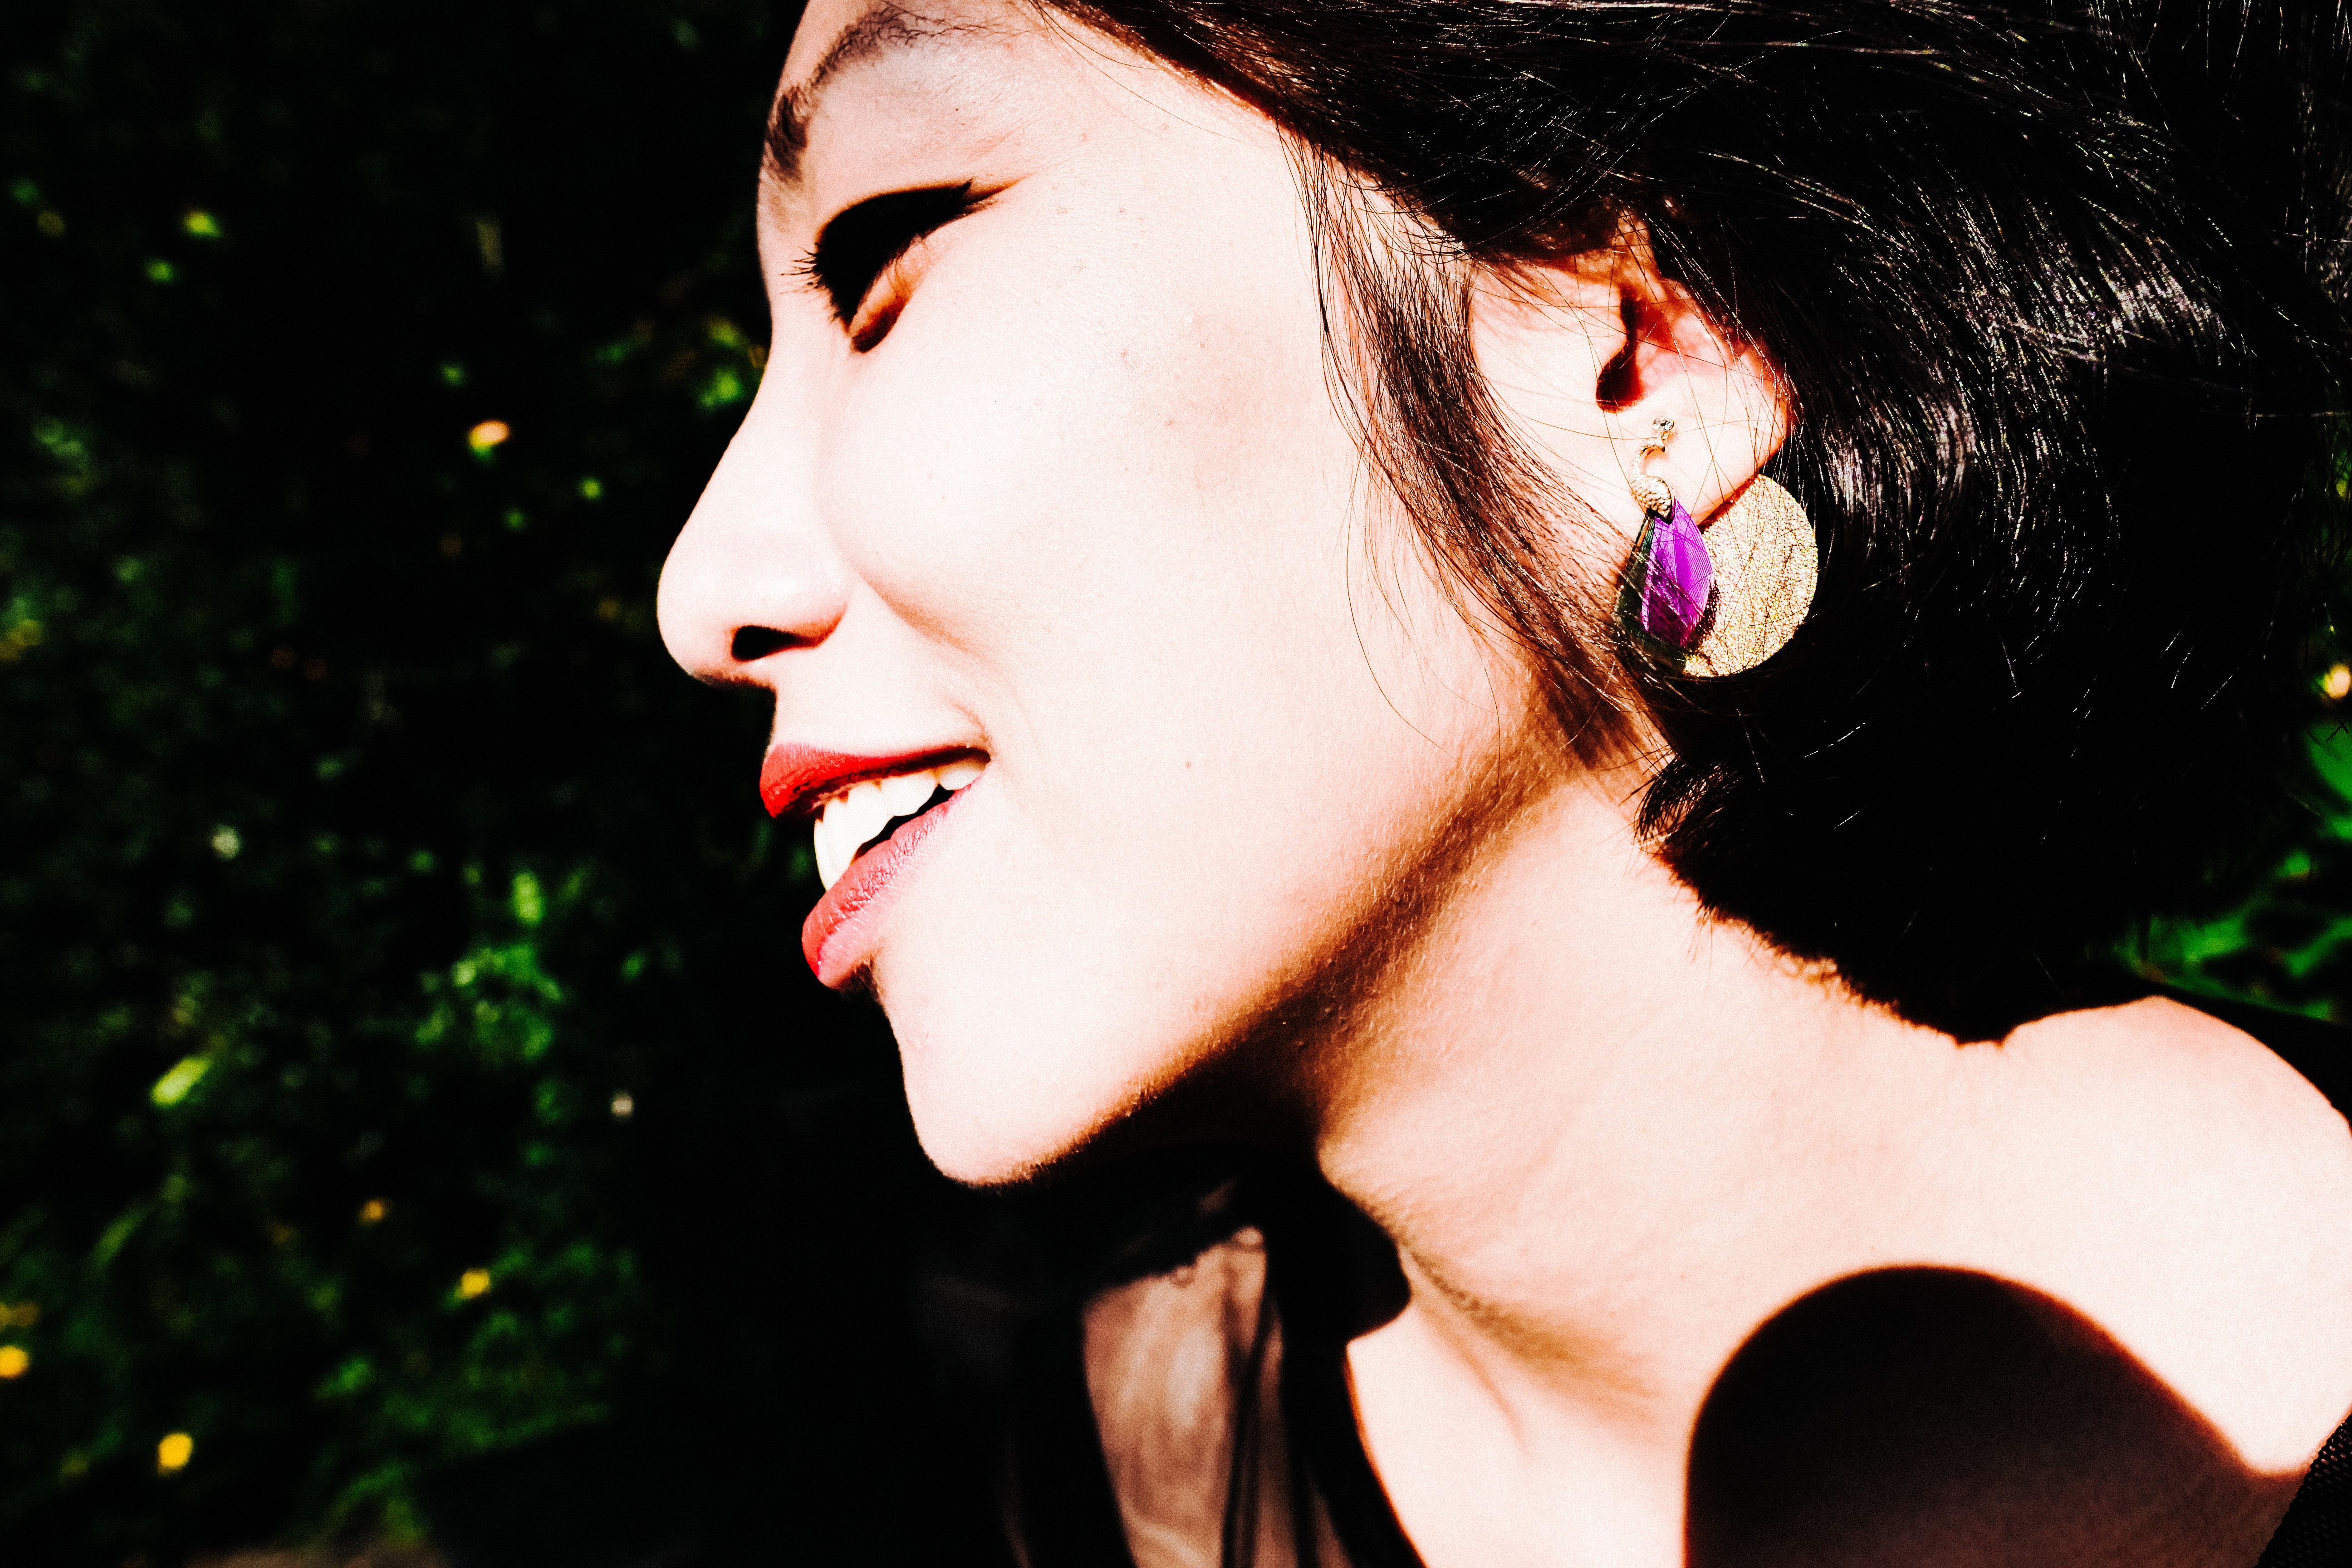 Cindy purple earring